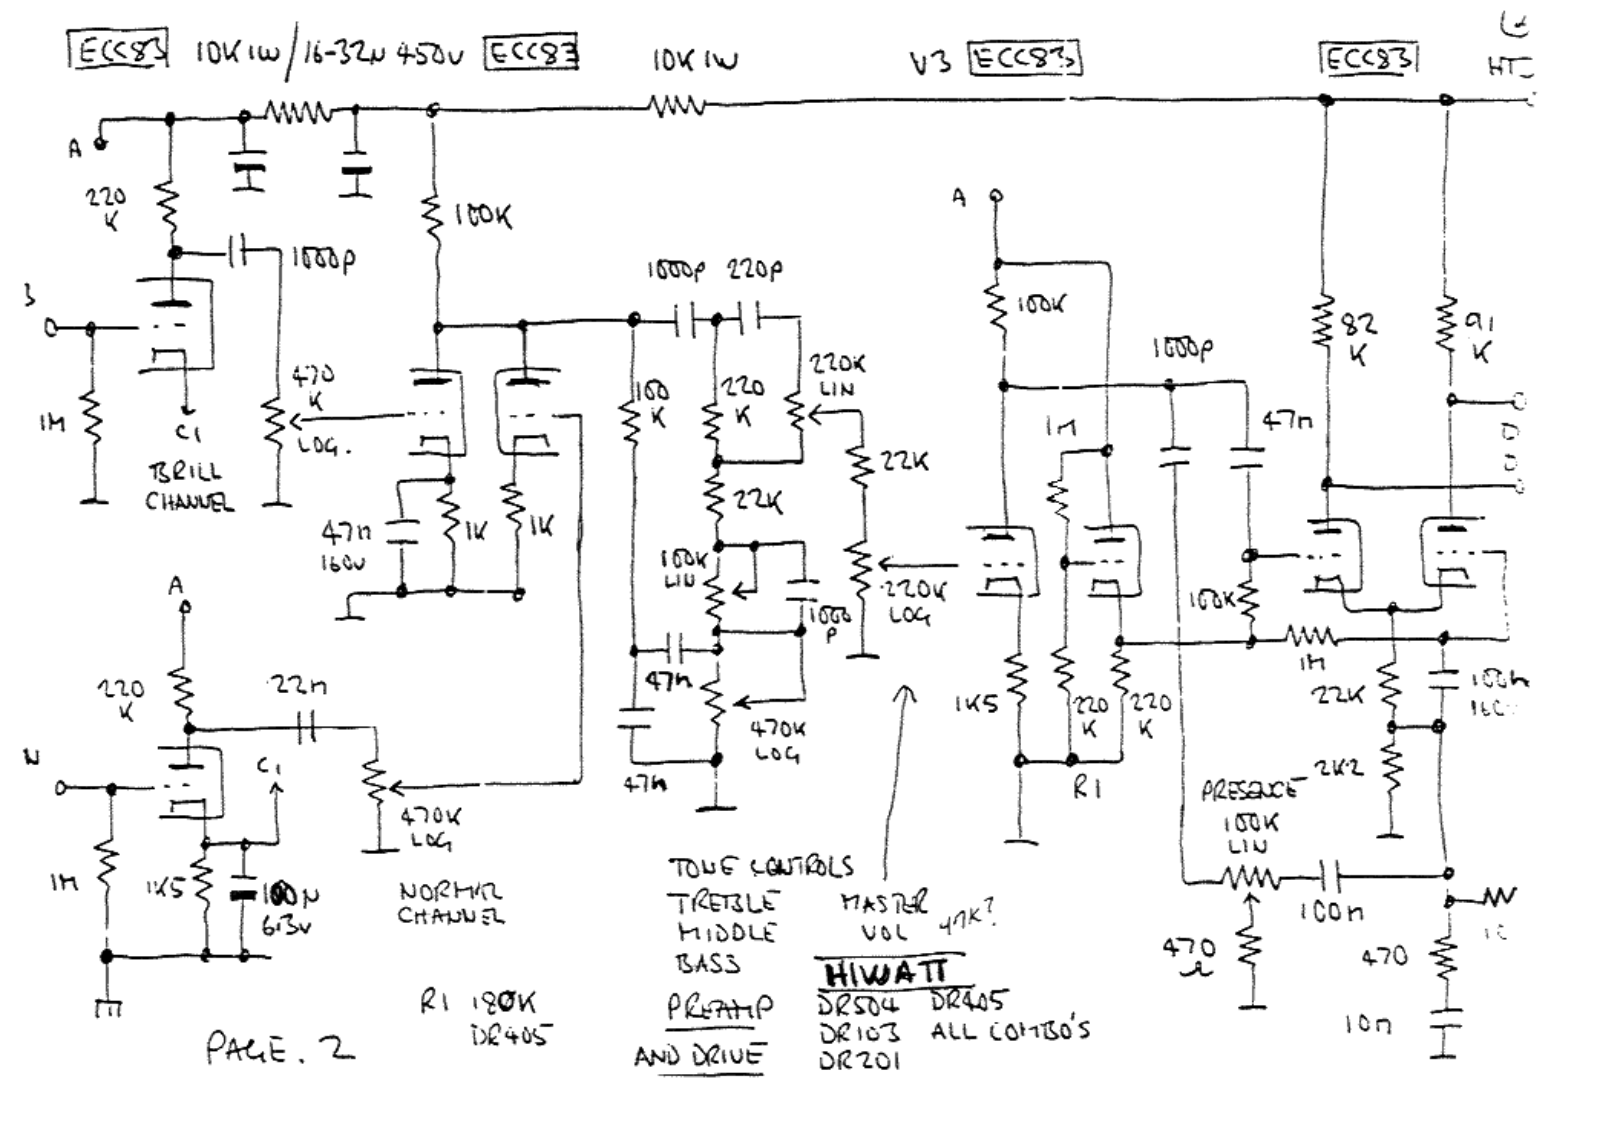 Hiwatt dr504 schematic